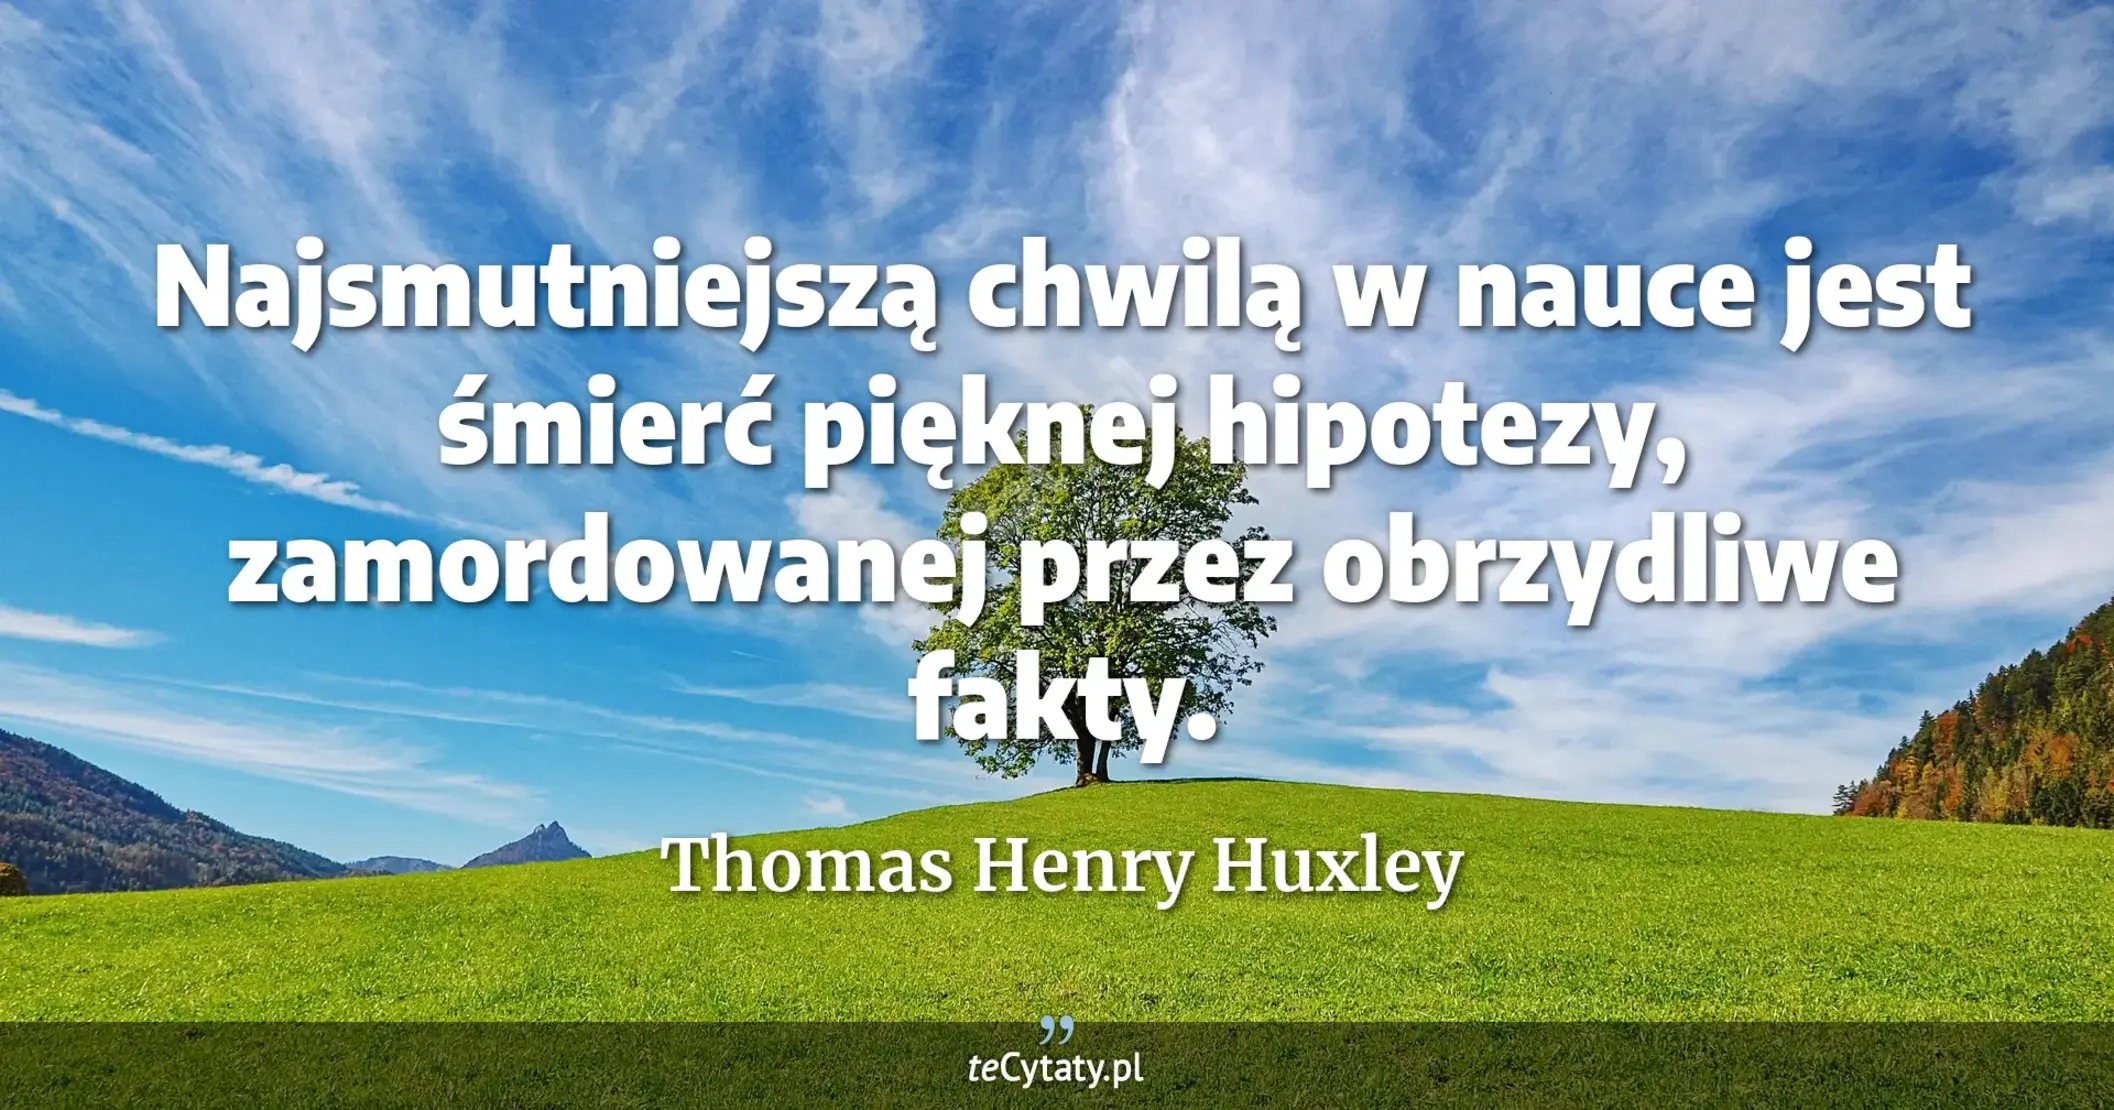 Najsmutniejszą chwilą w nauce jest śmierć pięknej hipotezy, zamordowanej przez obrzydliwe fakty. - Thomas Henry Huxley